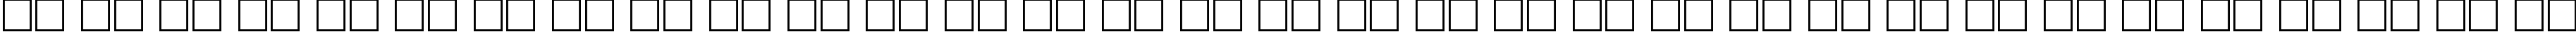 Пример написания русского алфавита шрифтом Bolide Regular